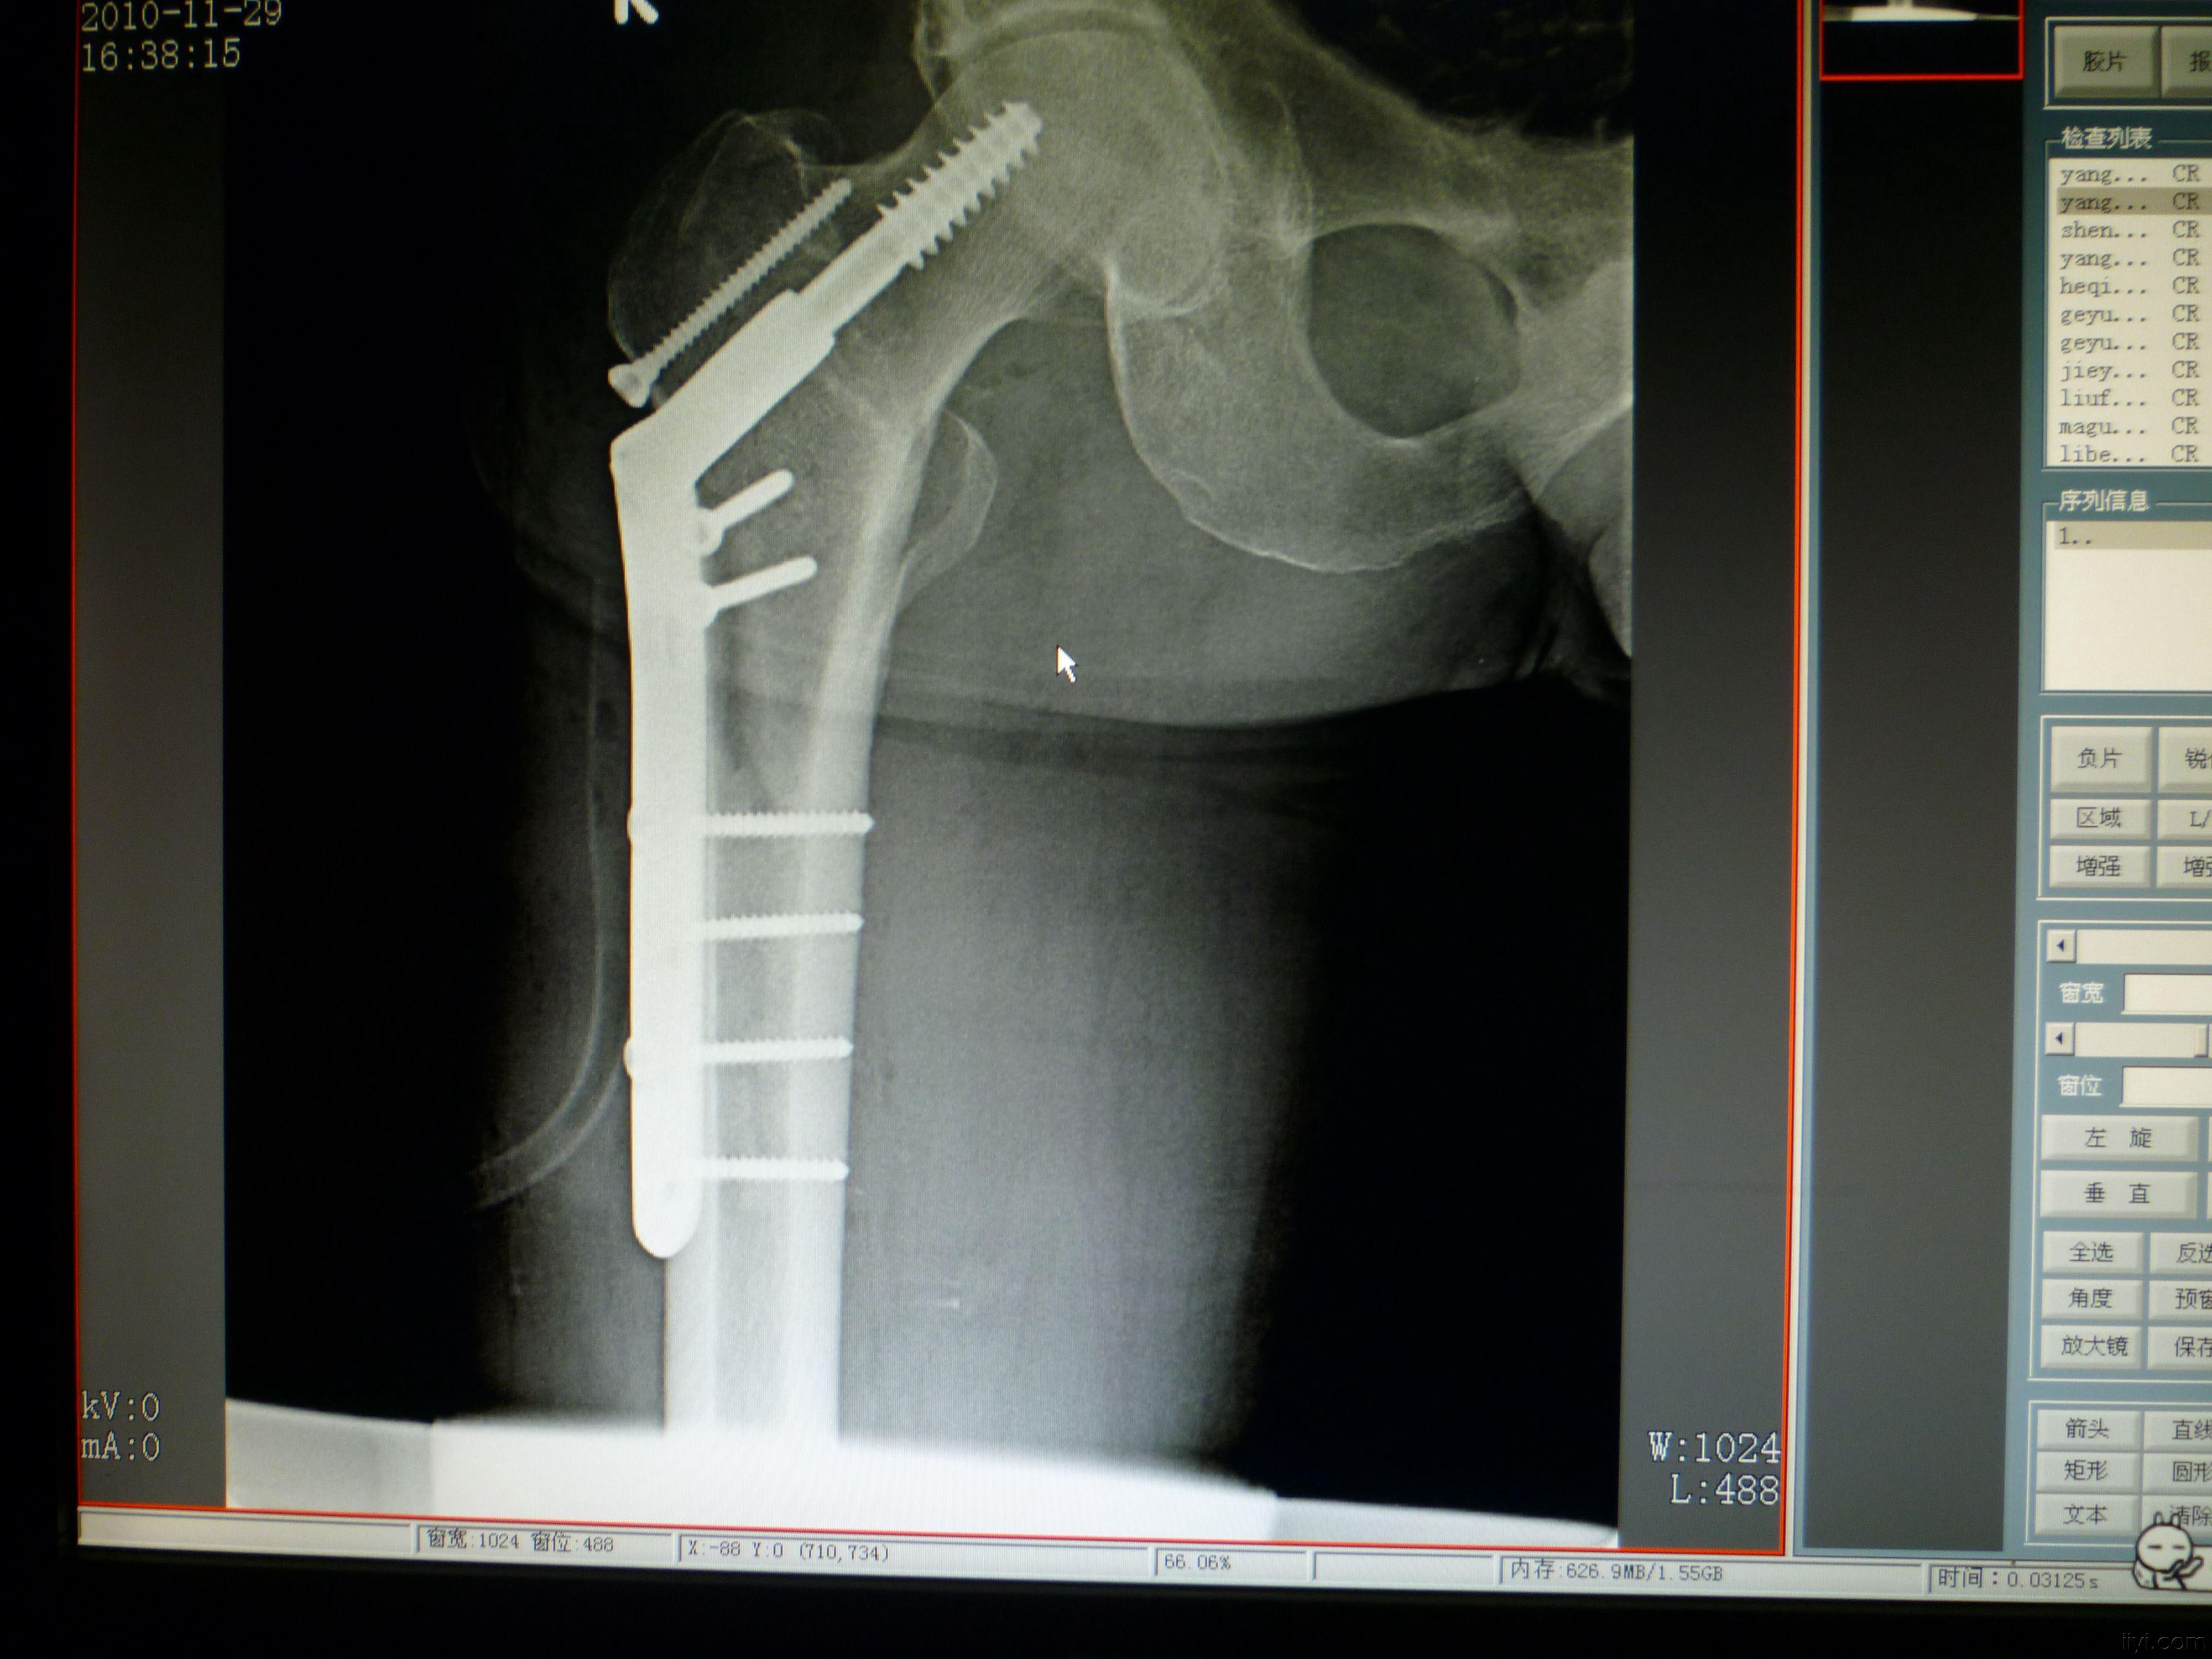 dhs与股骨近端钢板治疗粗隆骨折 两例